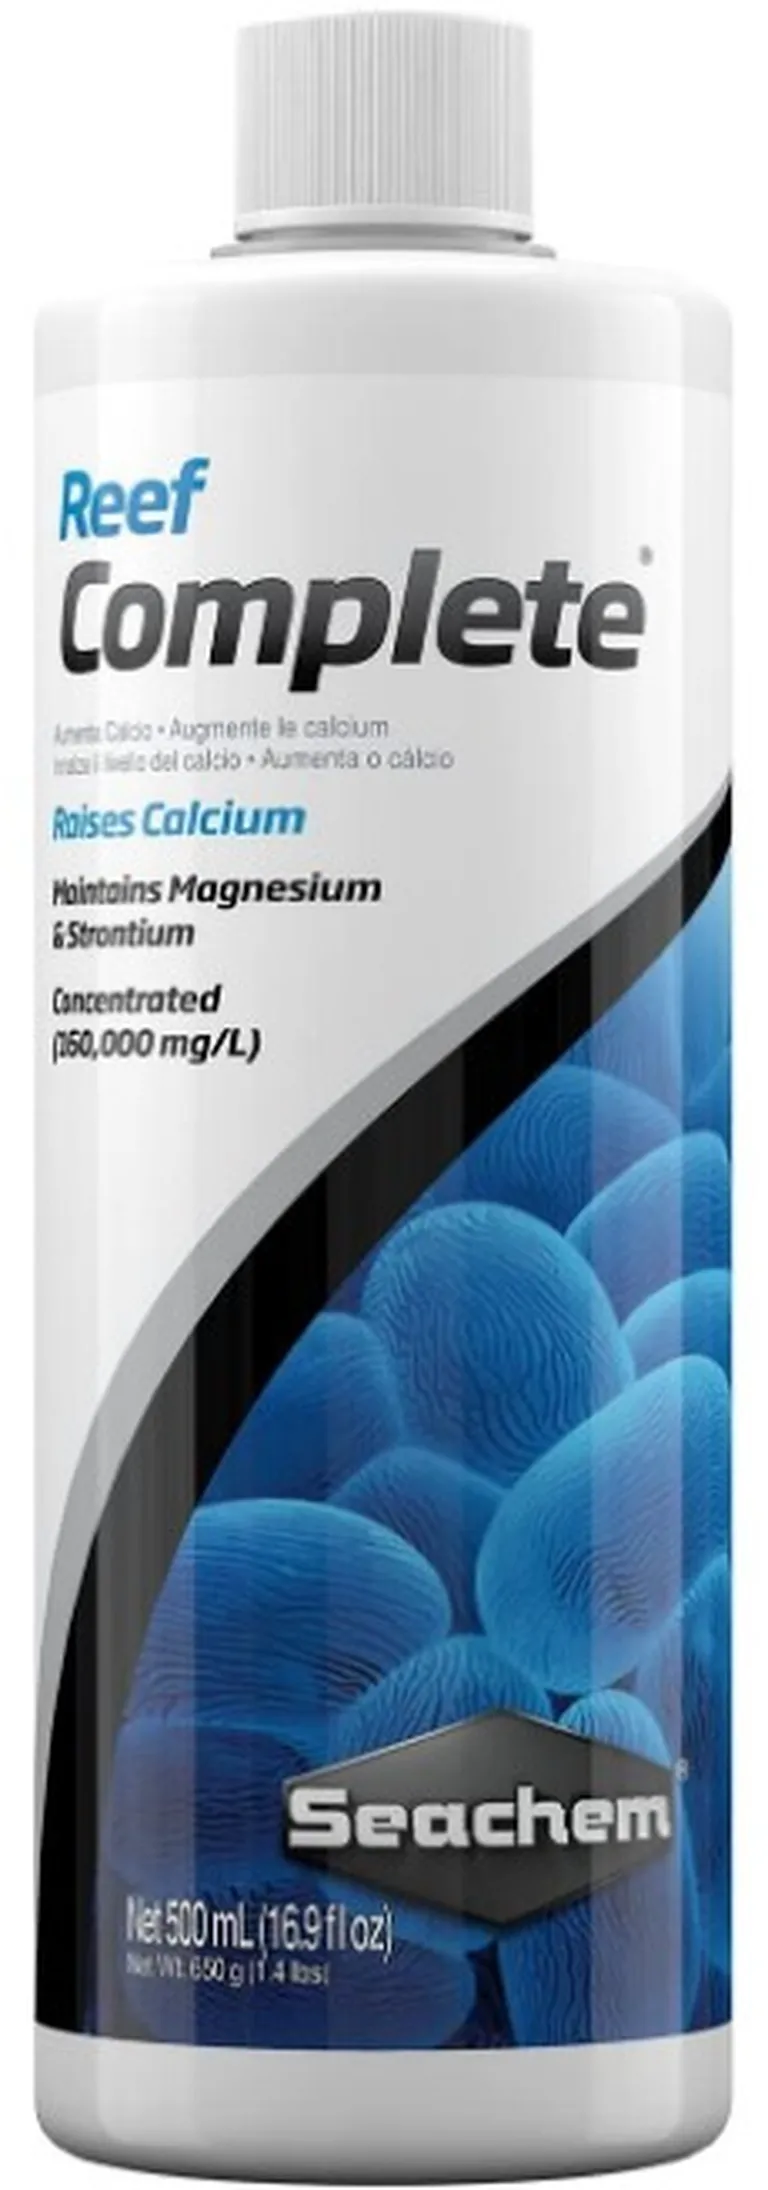 Seachem Reef Complete Raises Calcium and Maintains Magnesium and Strontium in Aquariums Photo 2